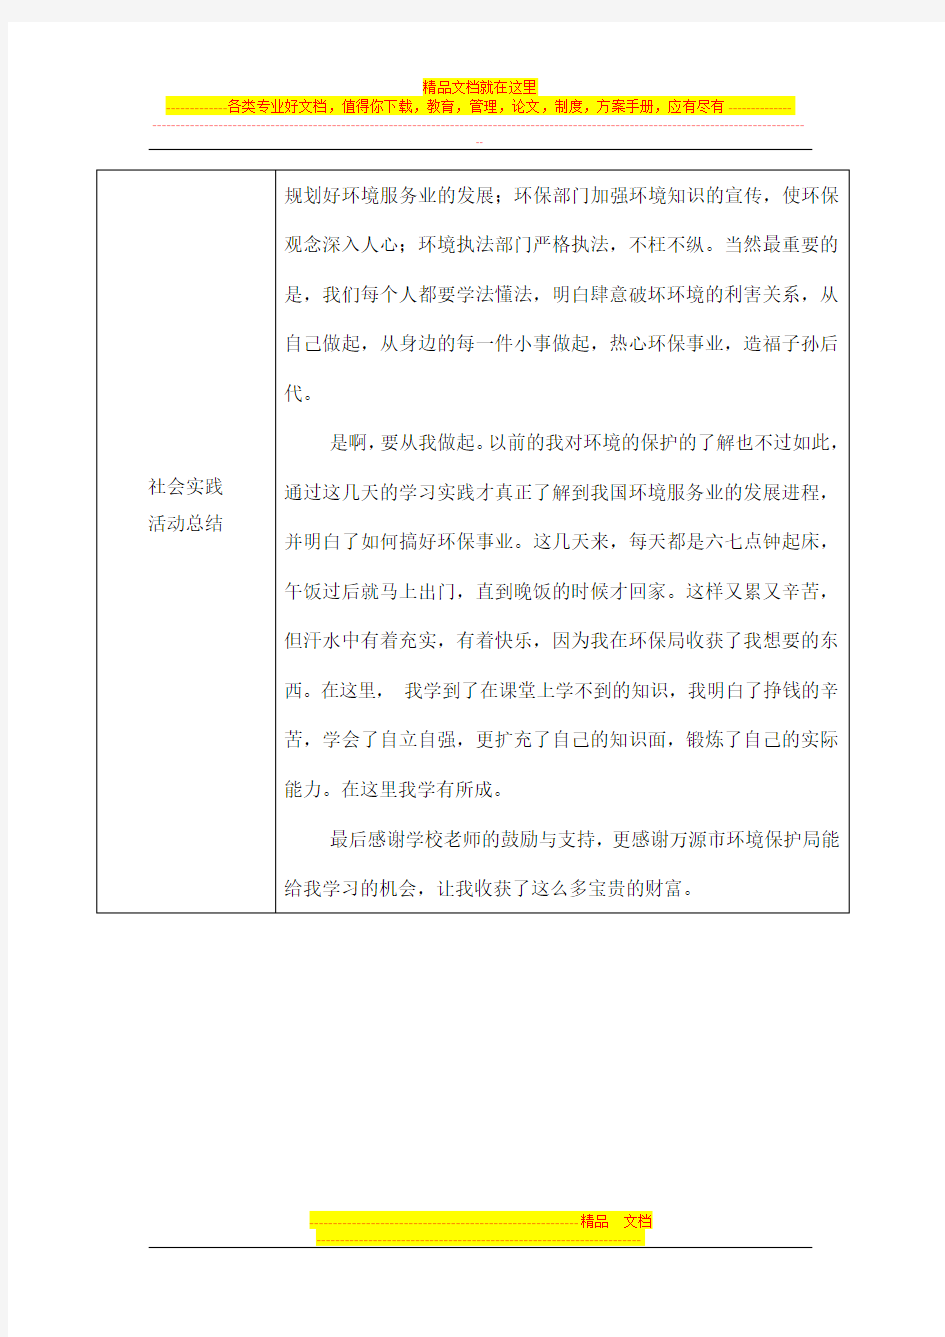 四川省普通高中学生社会实践活动登记表